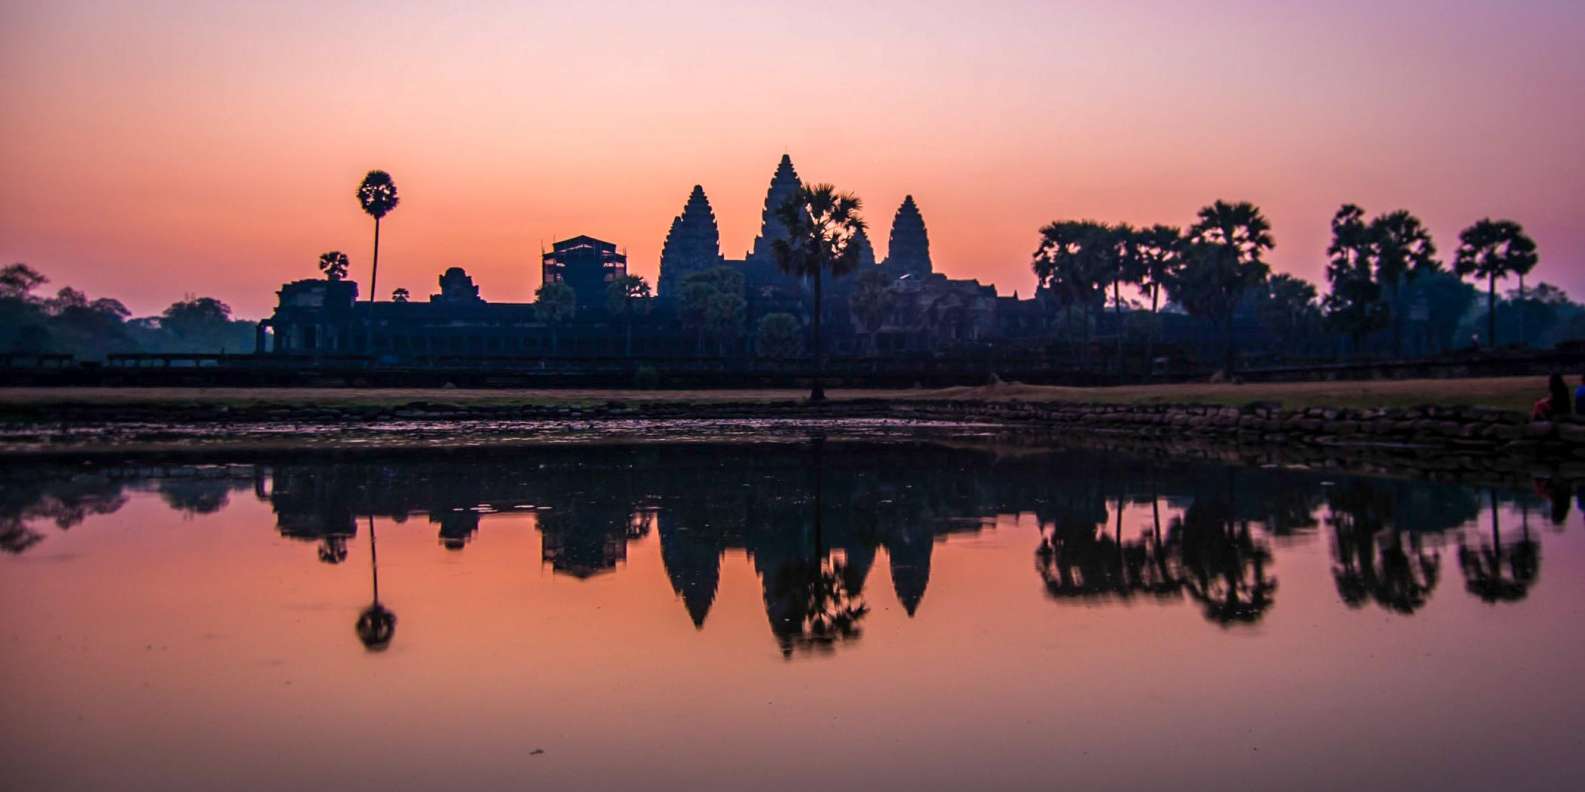 Journée Inoubliable à Angkor Wat